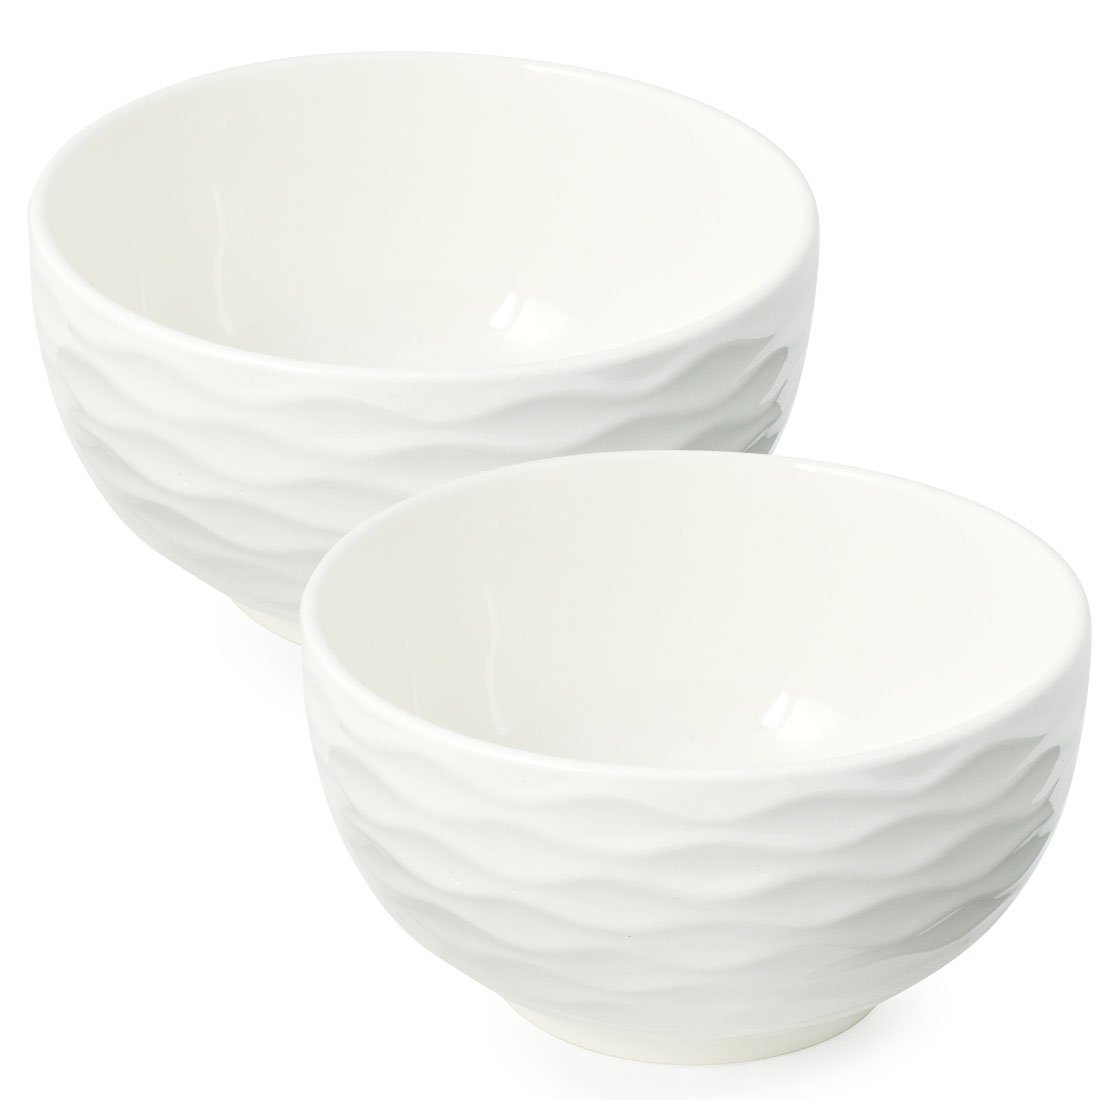 Bowl Tigela de Porcelana Branco 400ml Kit com 2 Peças - 1